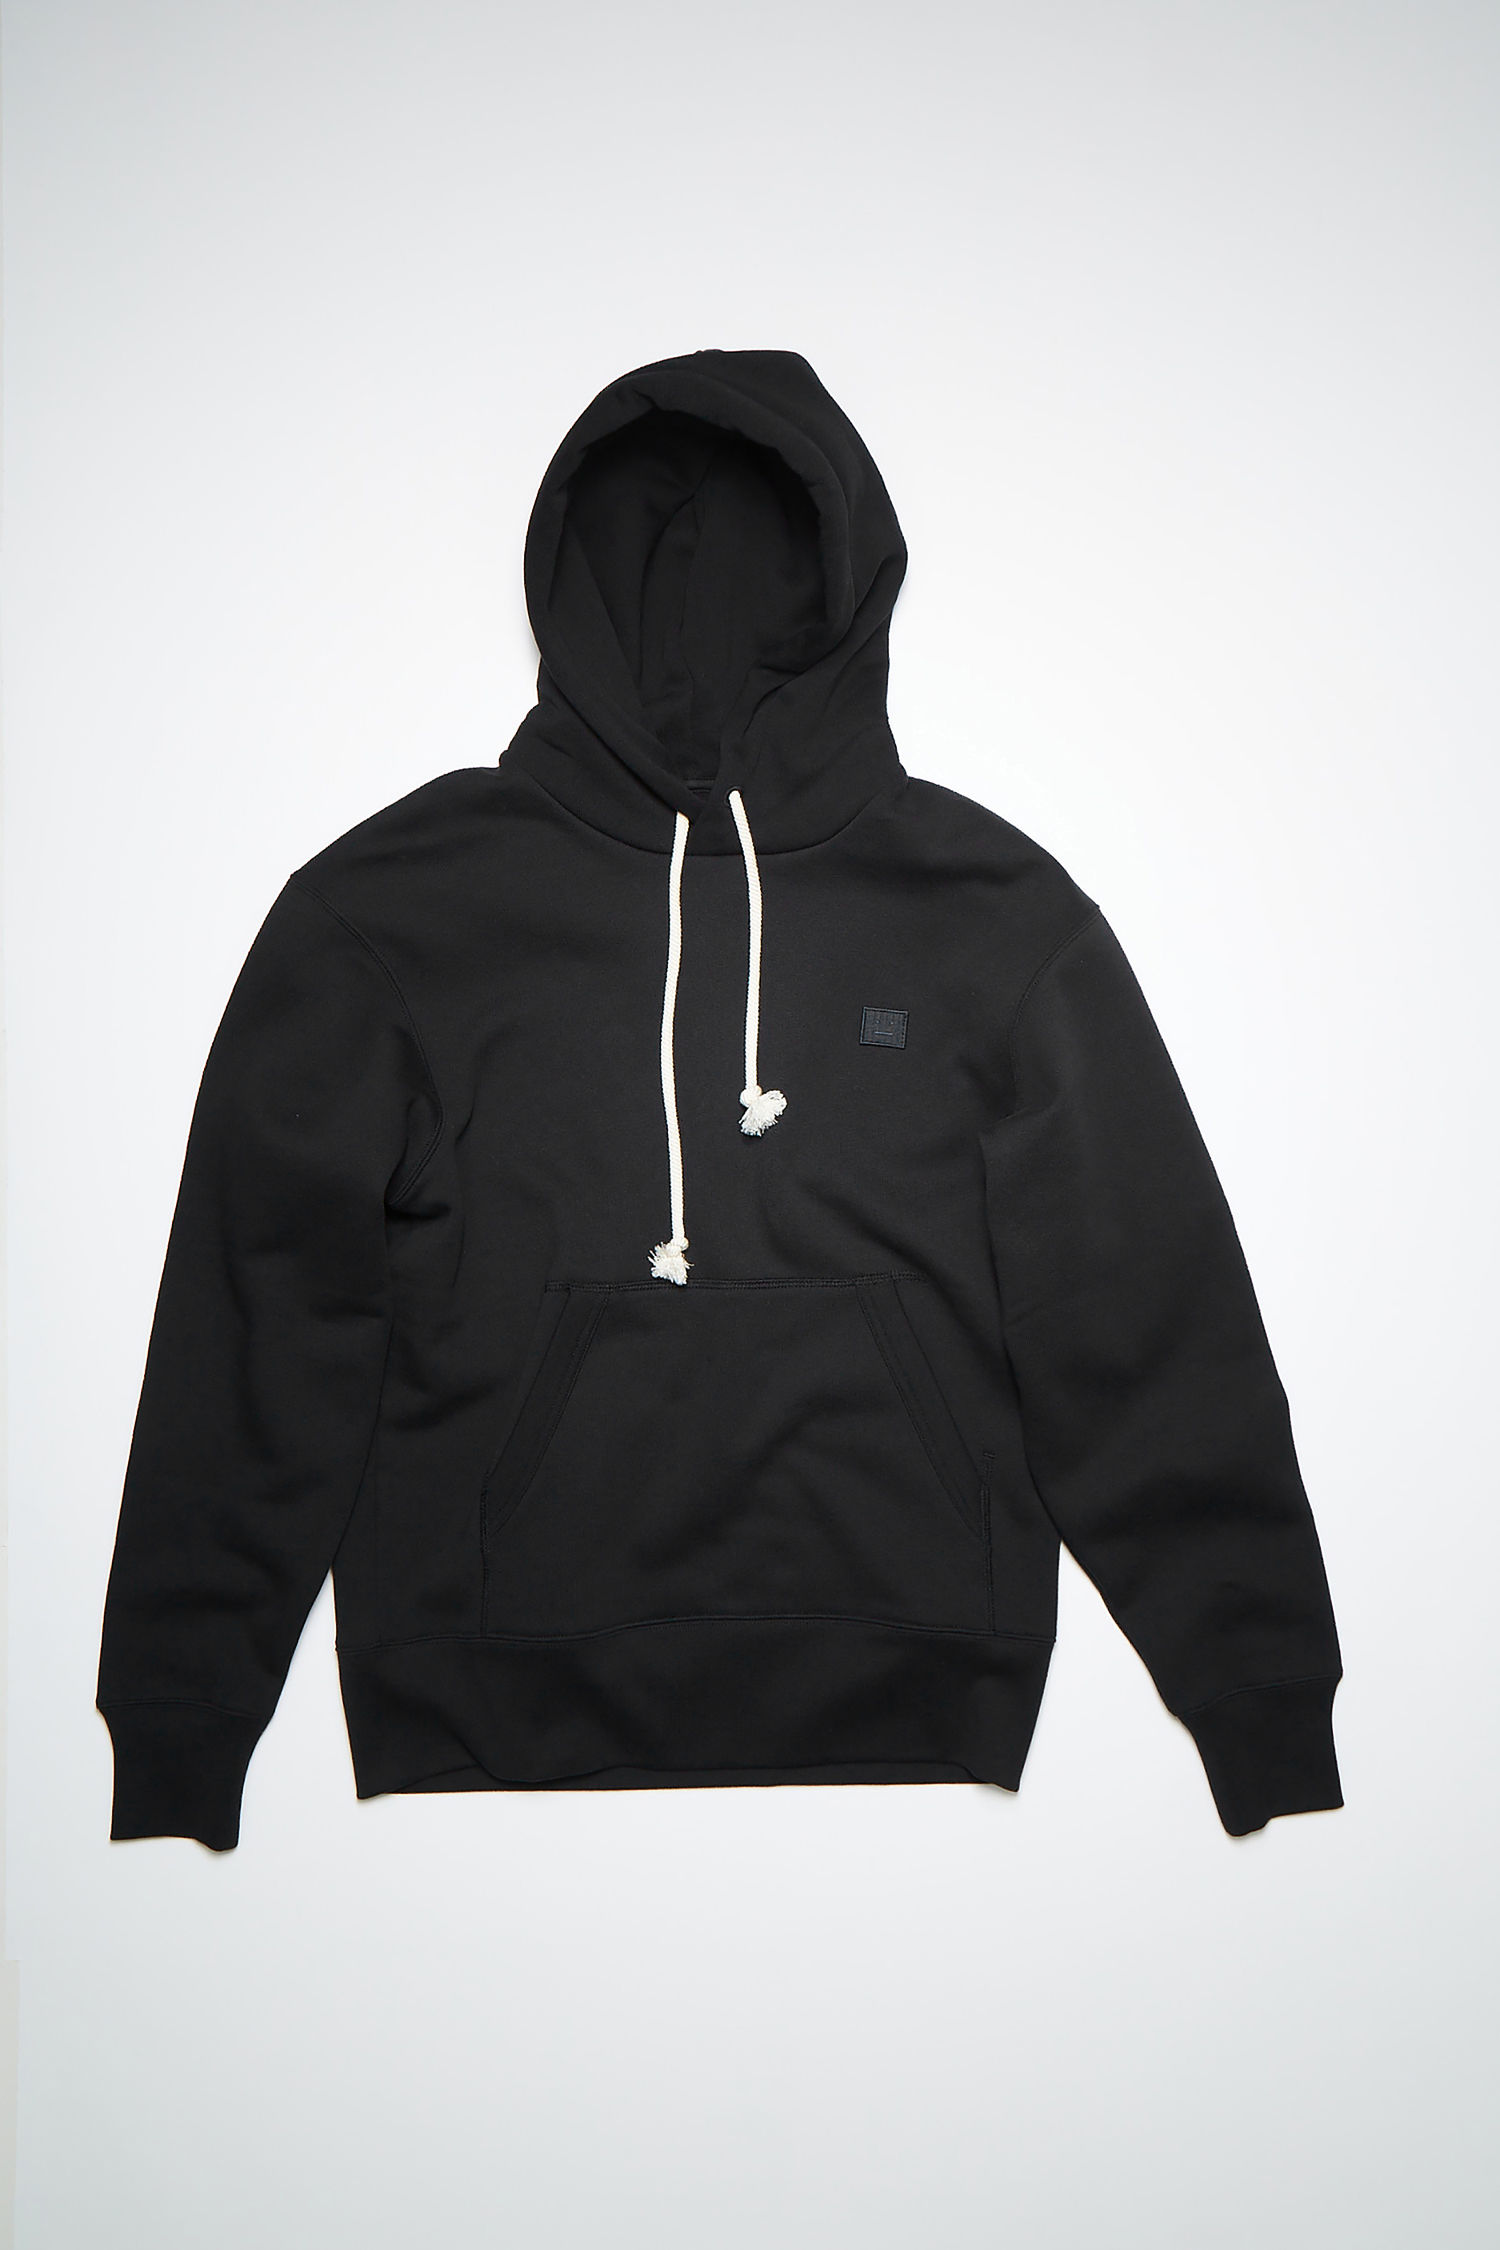 Acne Studios - Hooded sweatshirt - Black